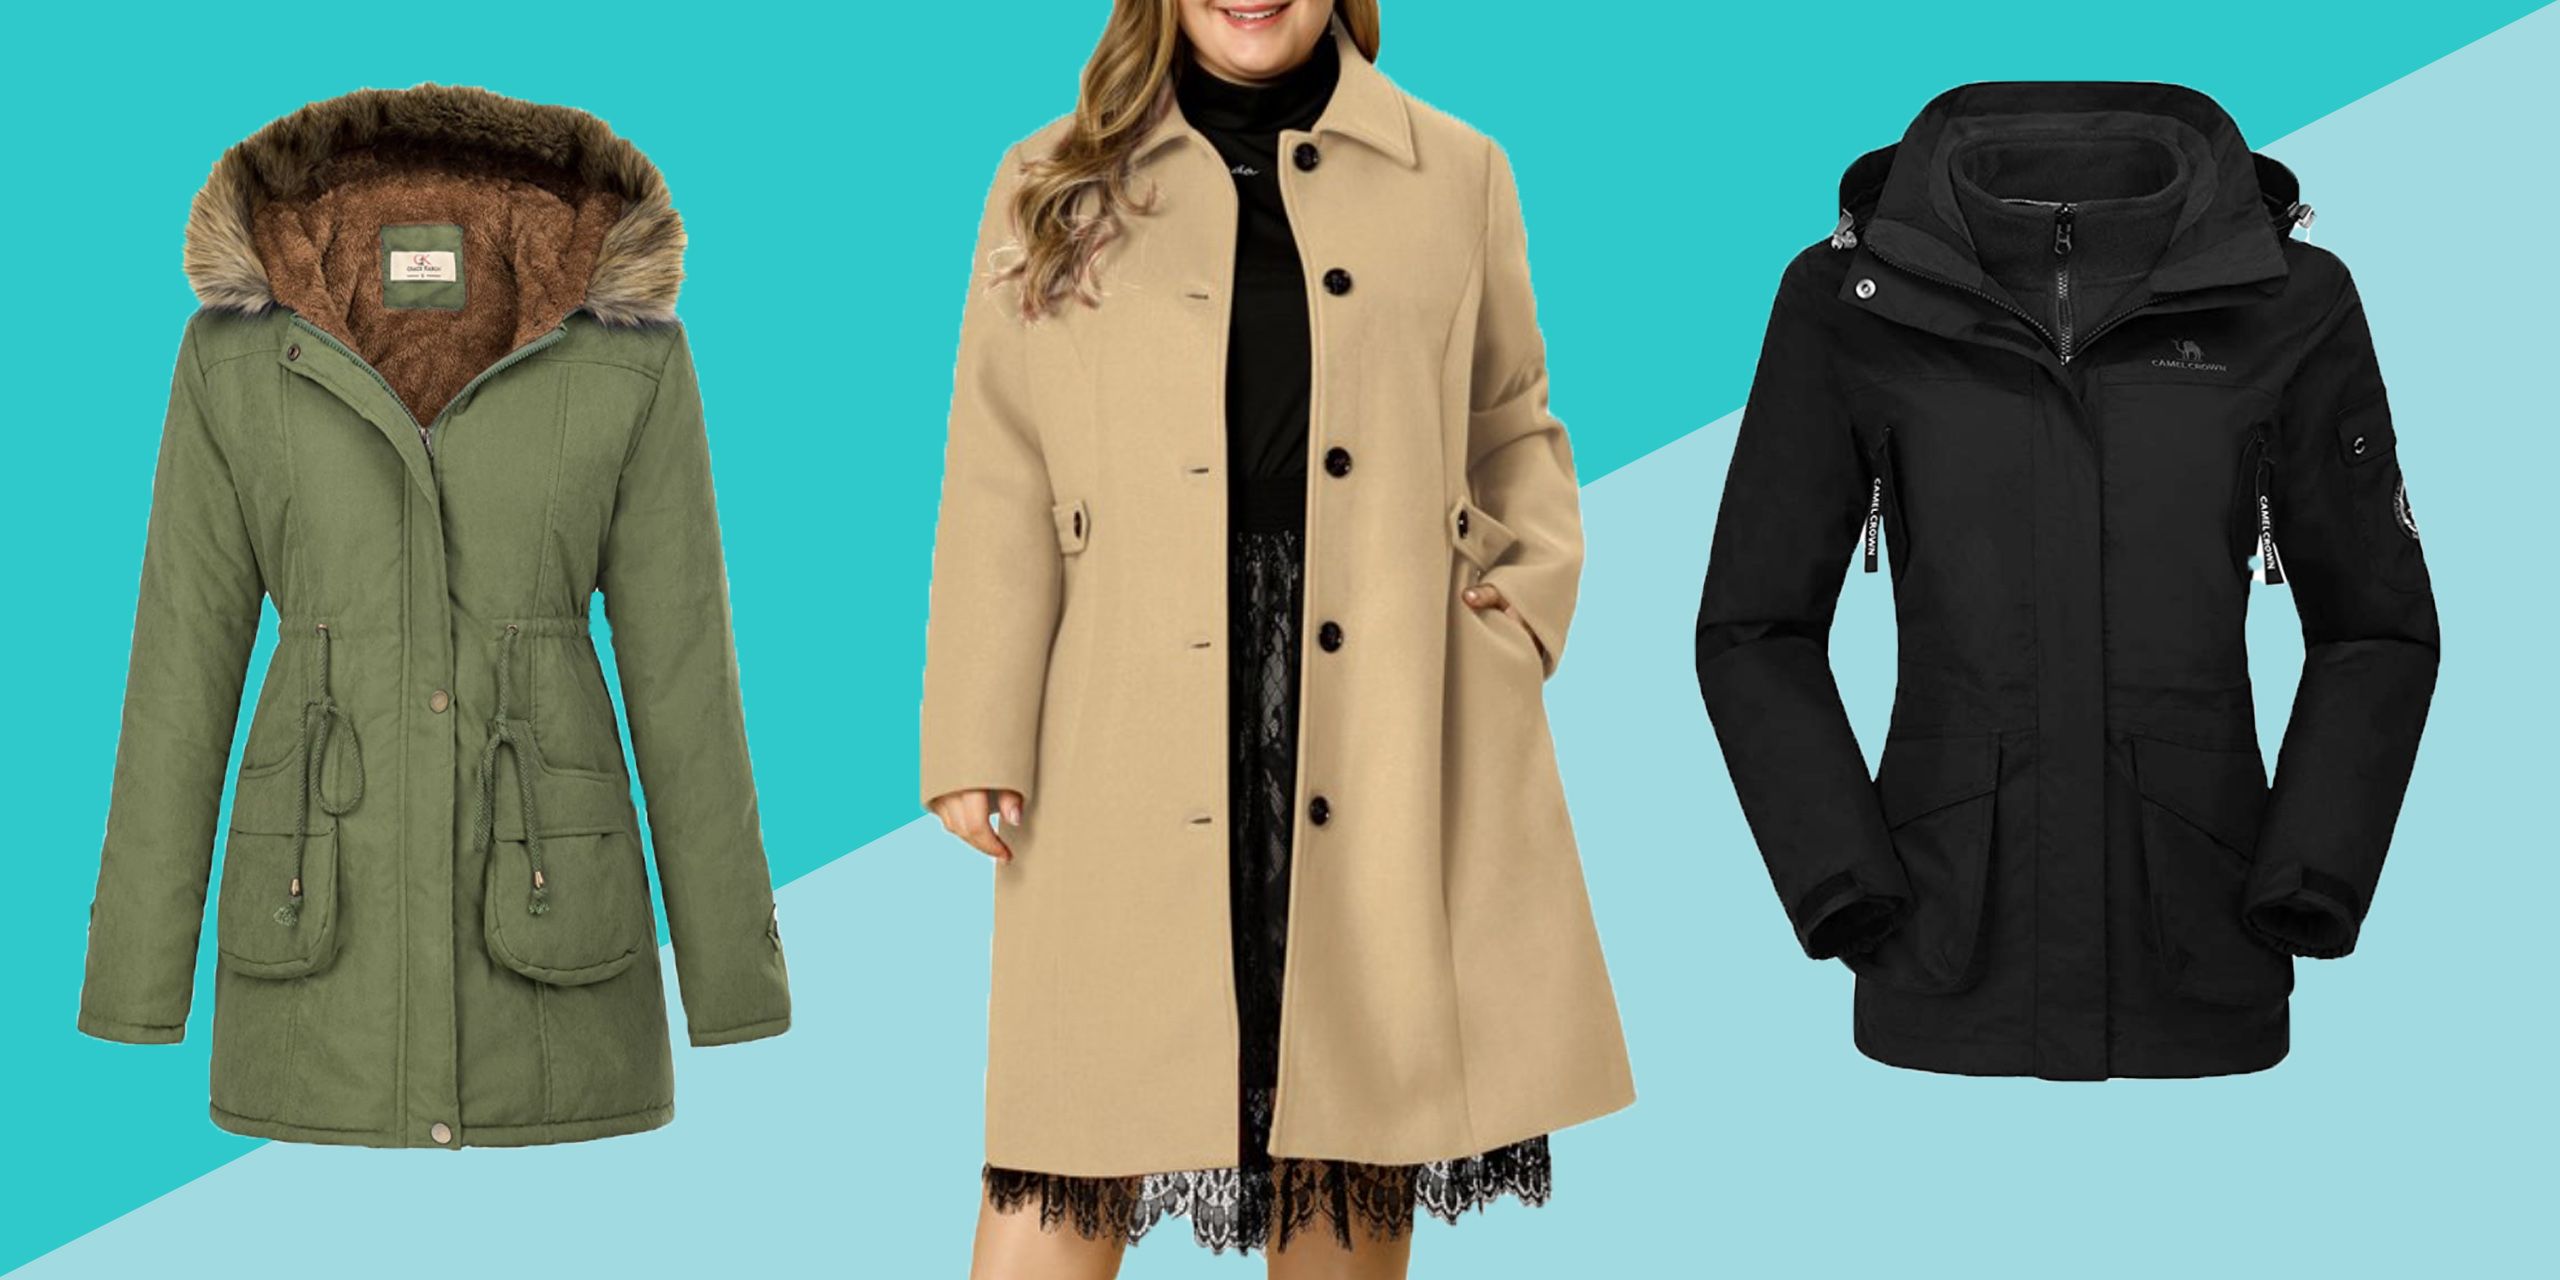 aihihe Women’S Jacket Coat for Winter Plus Size Faux Fur Outdoor Warm Hooded Coats Jackets Outwear Overcoat Parka 